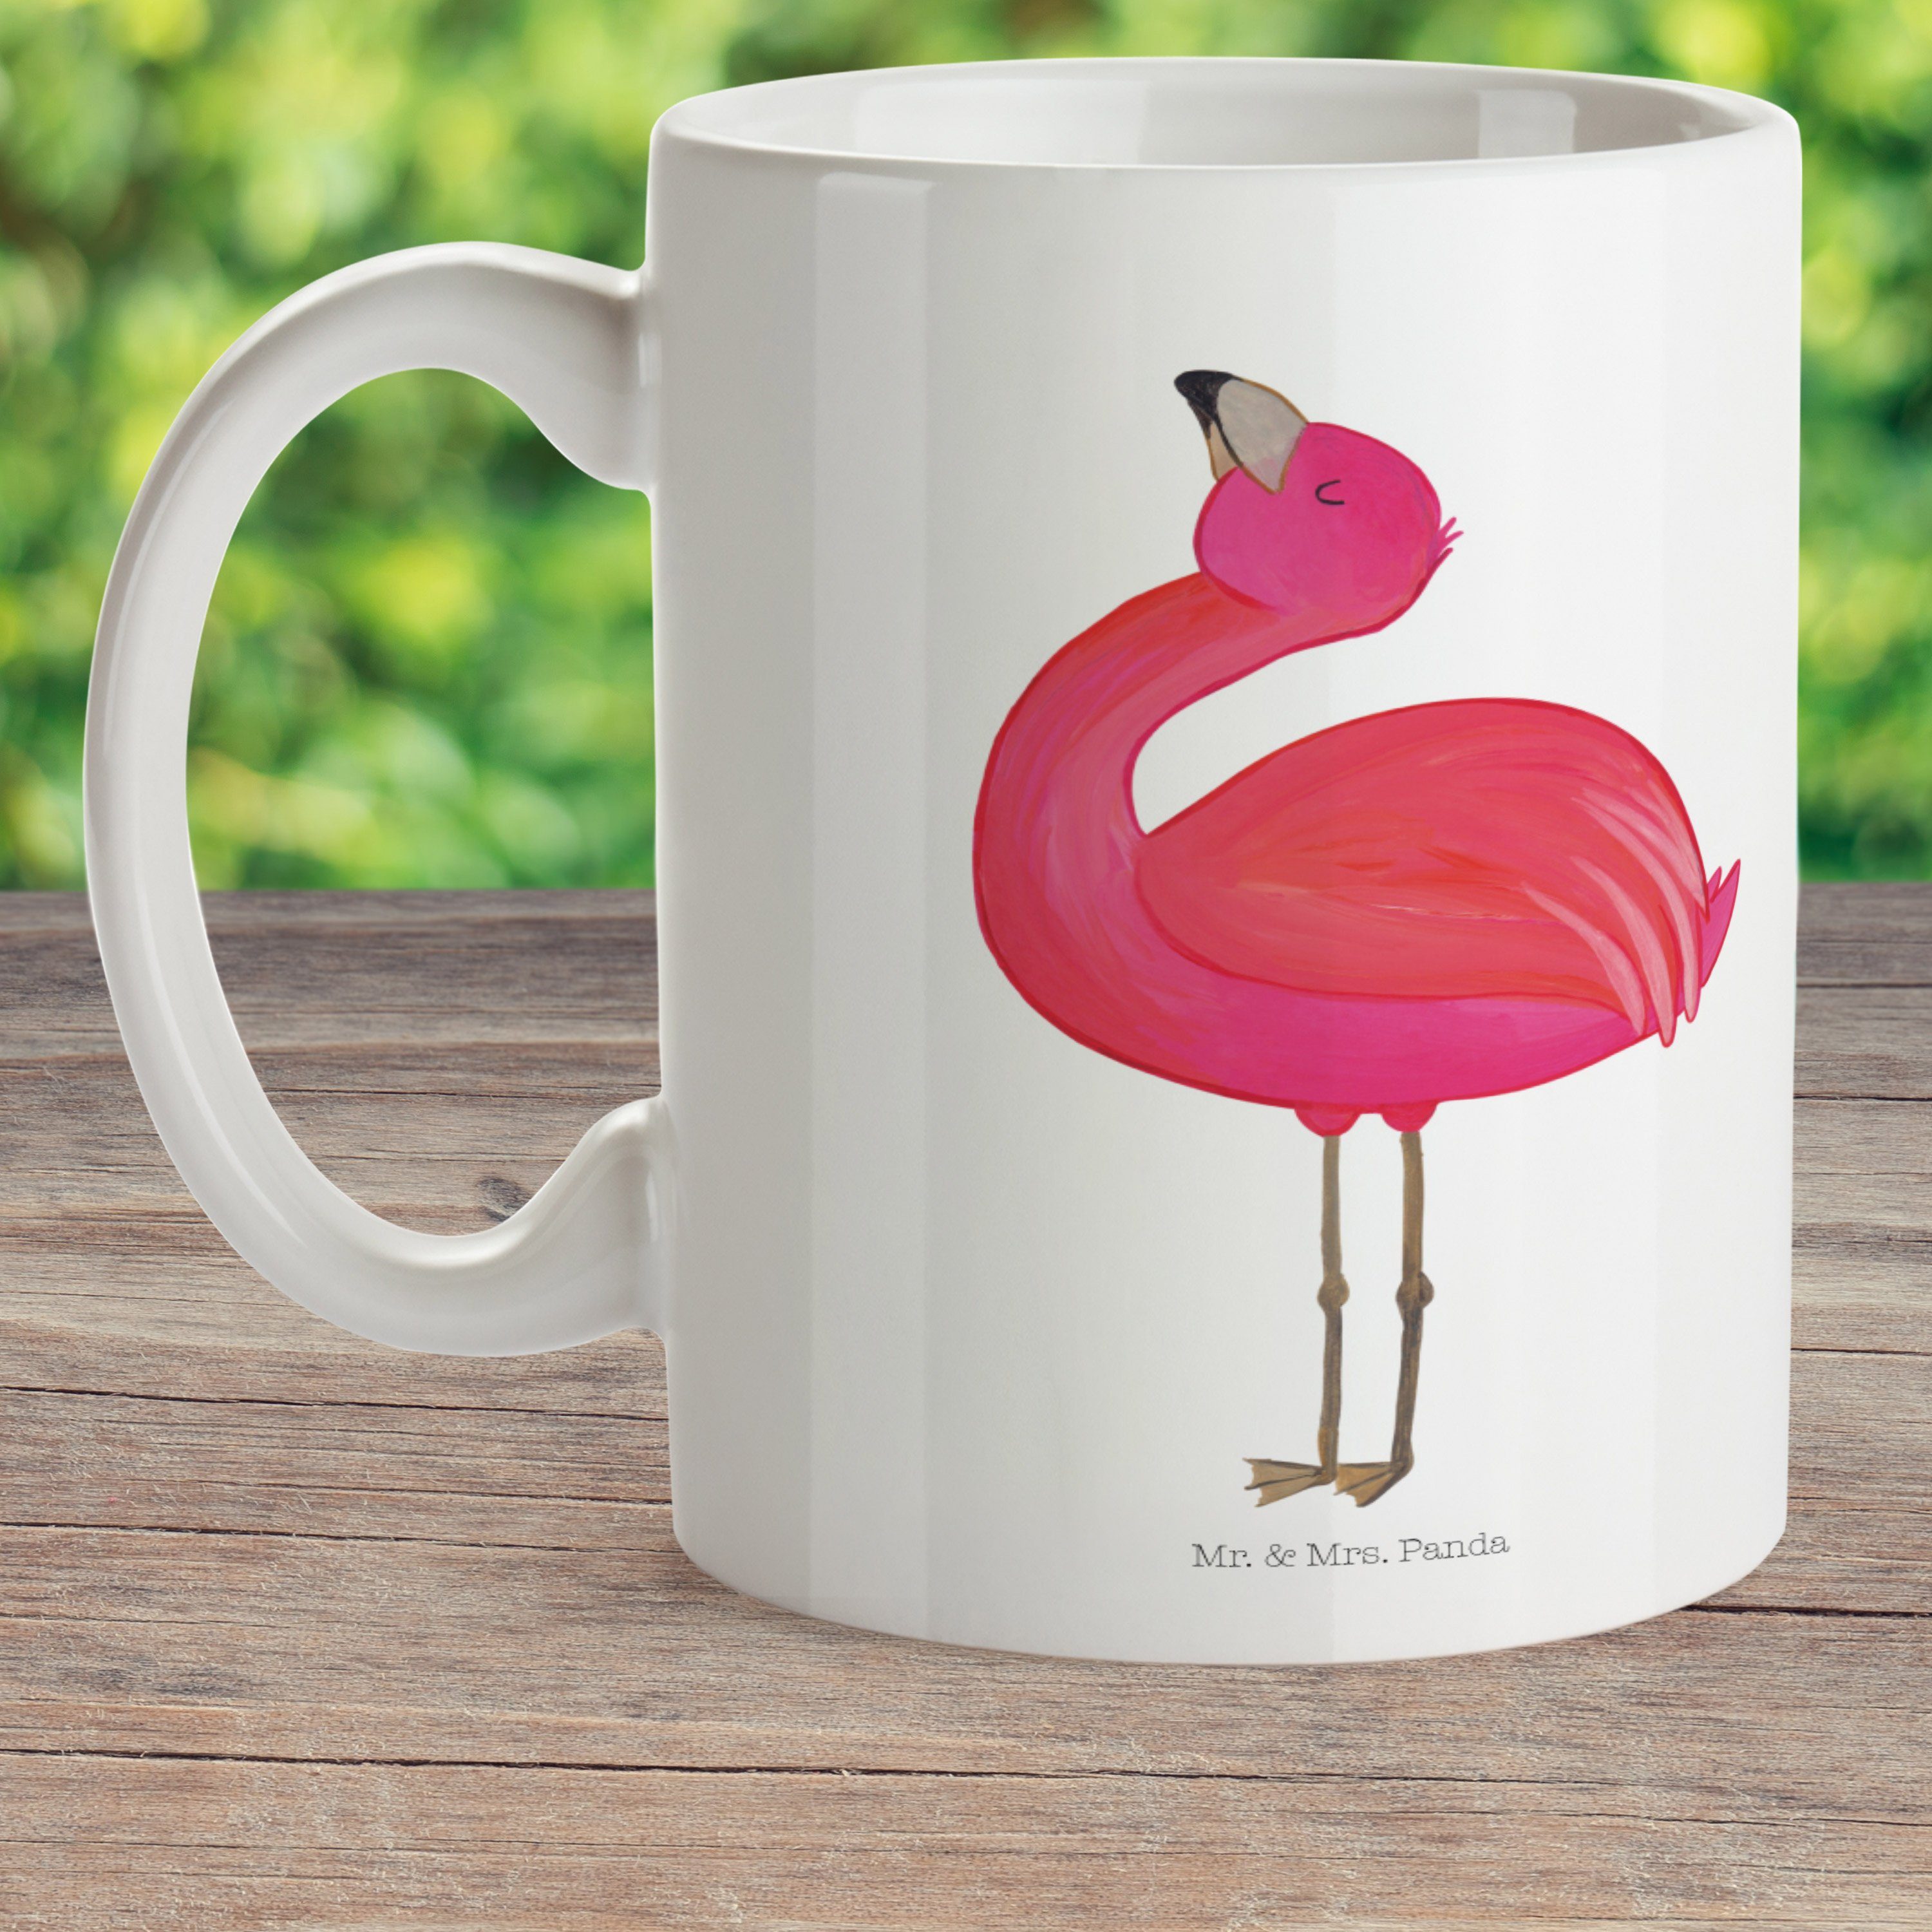 & - - Kaffeet, Flamingo Weiß Panda Kinderbecher Selbstakzeptanz, Mr. Geschenk, Kunststoff glücklich, Mrs. stolz